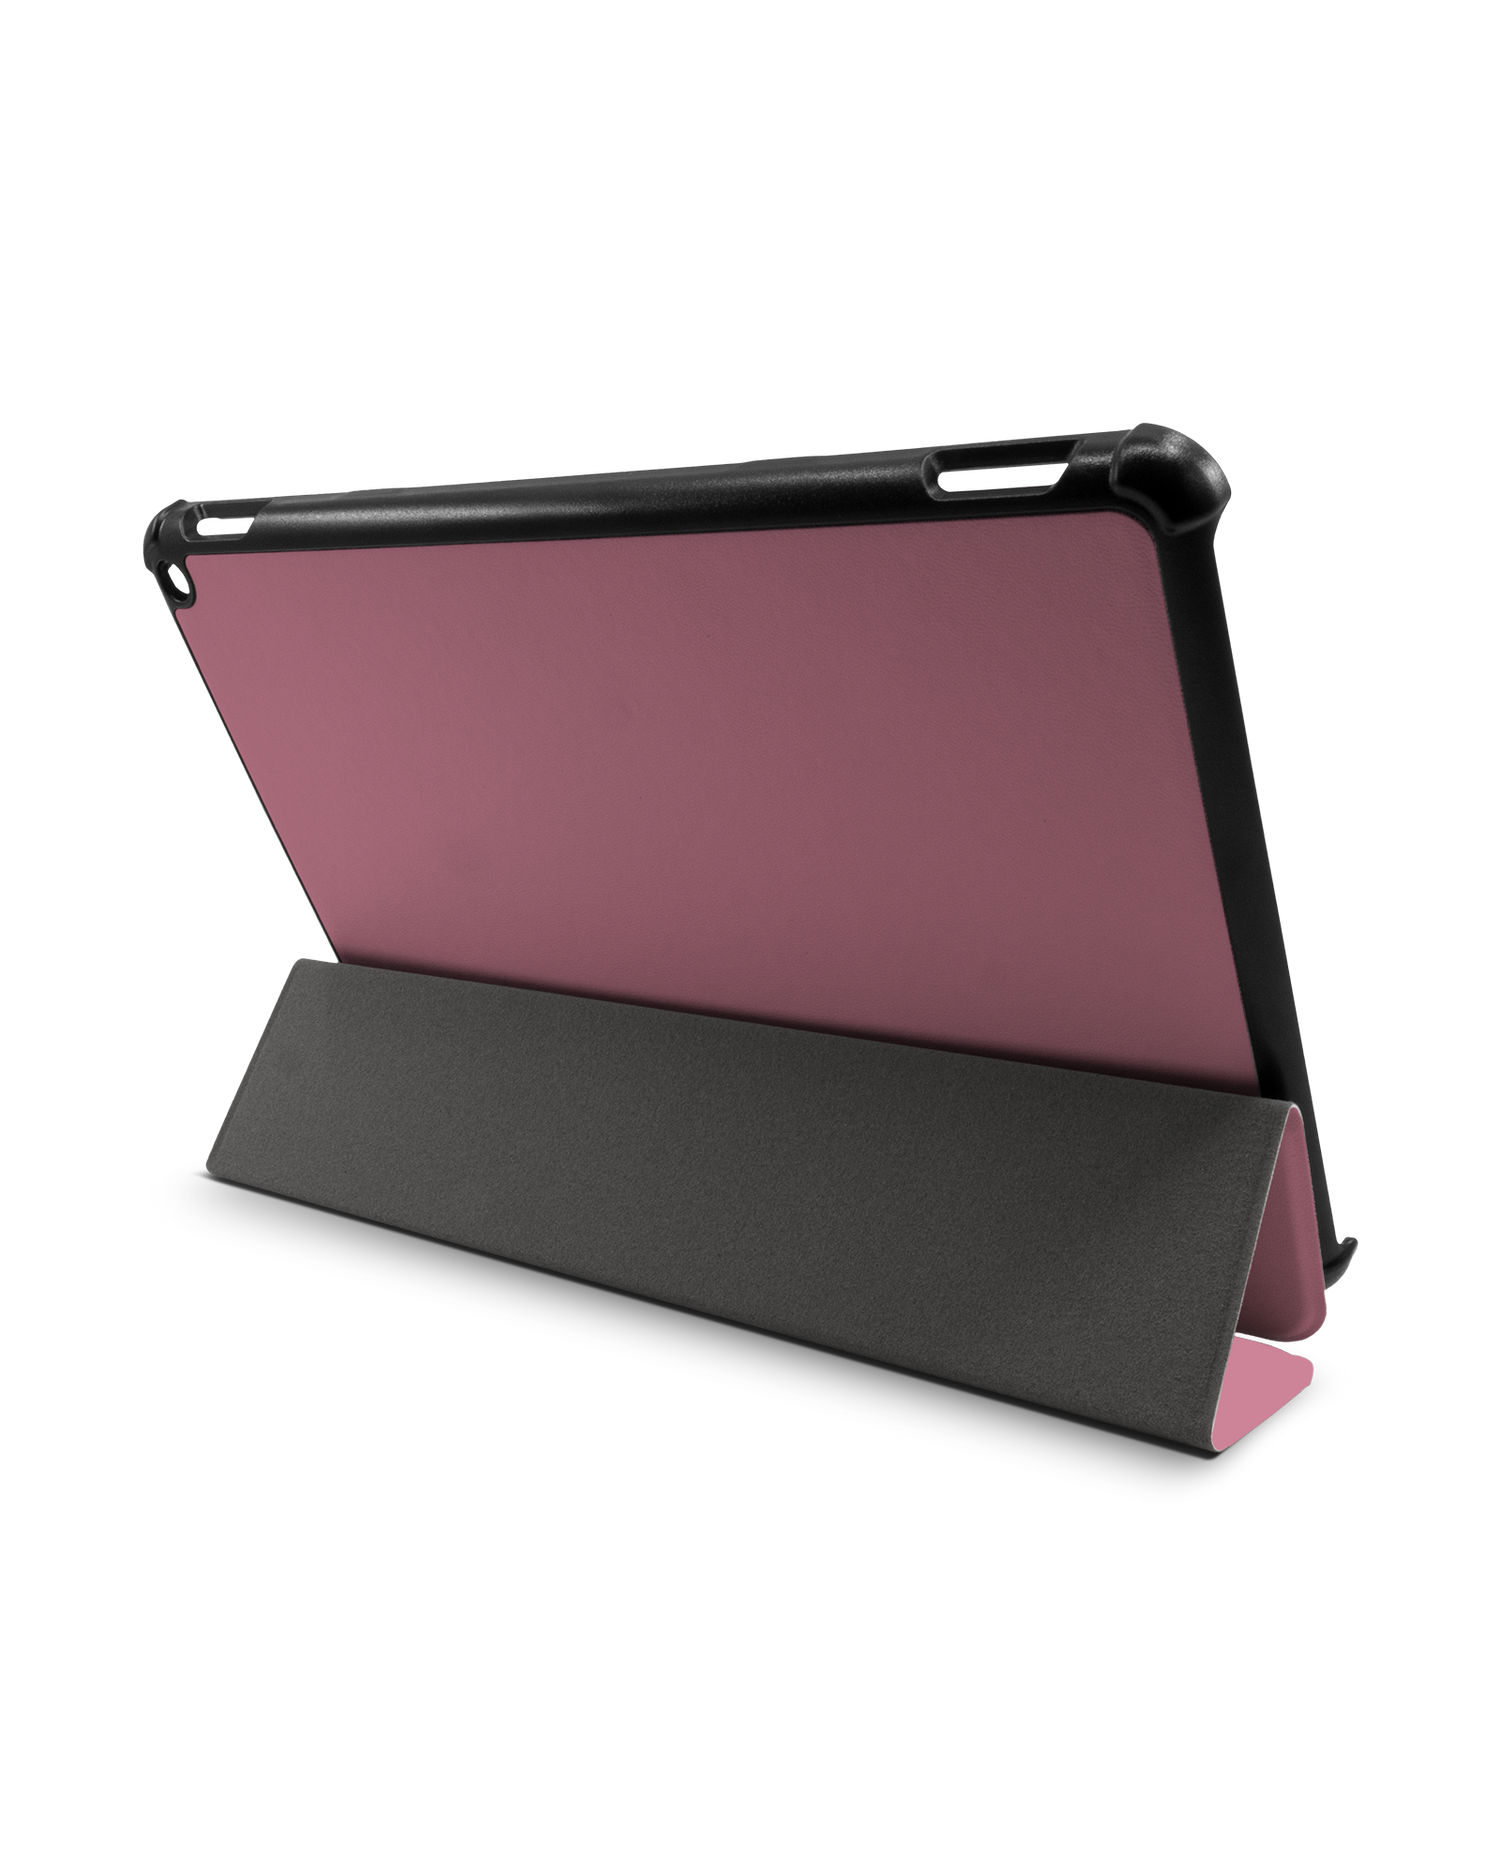 WILD ROSE Tablet Smart Case für Amazon Fire HD 10 (2021): Aufgestellt im Querformat